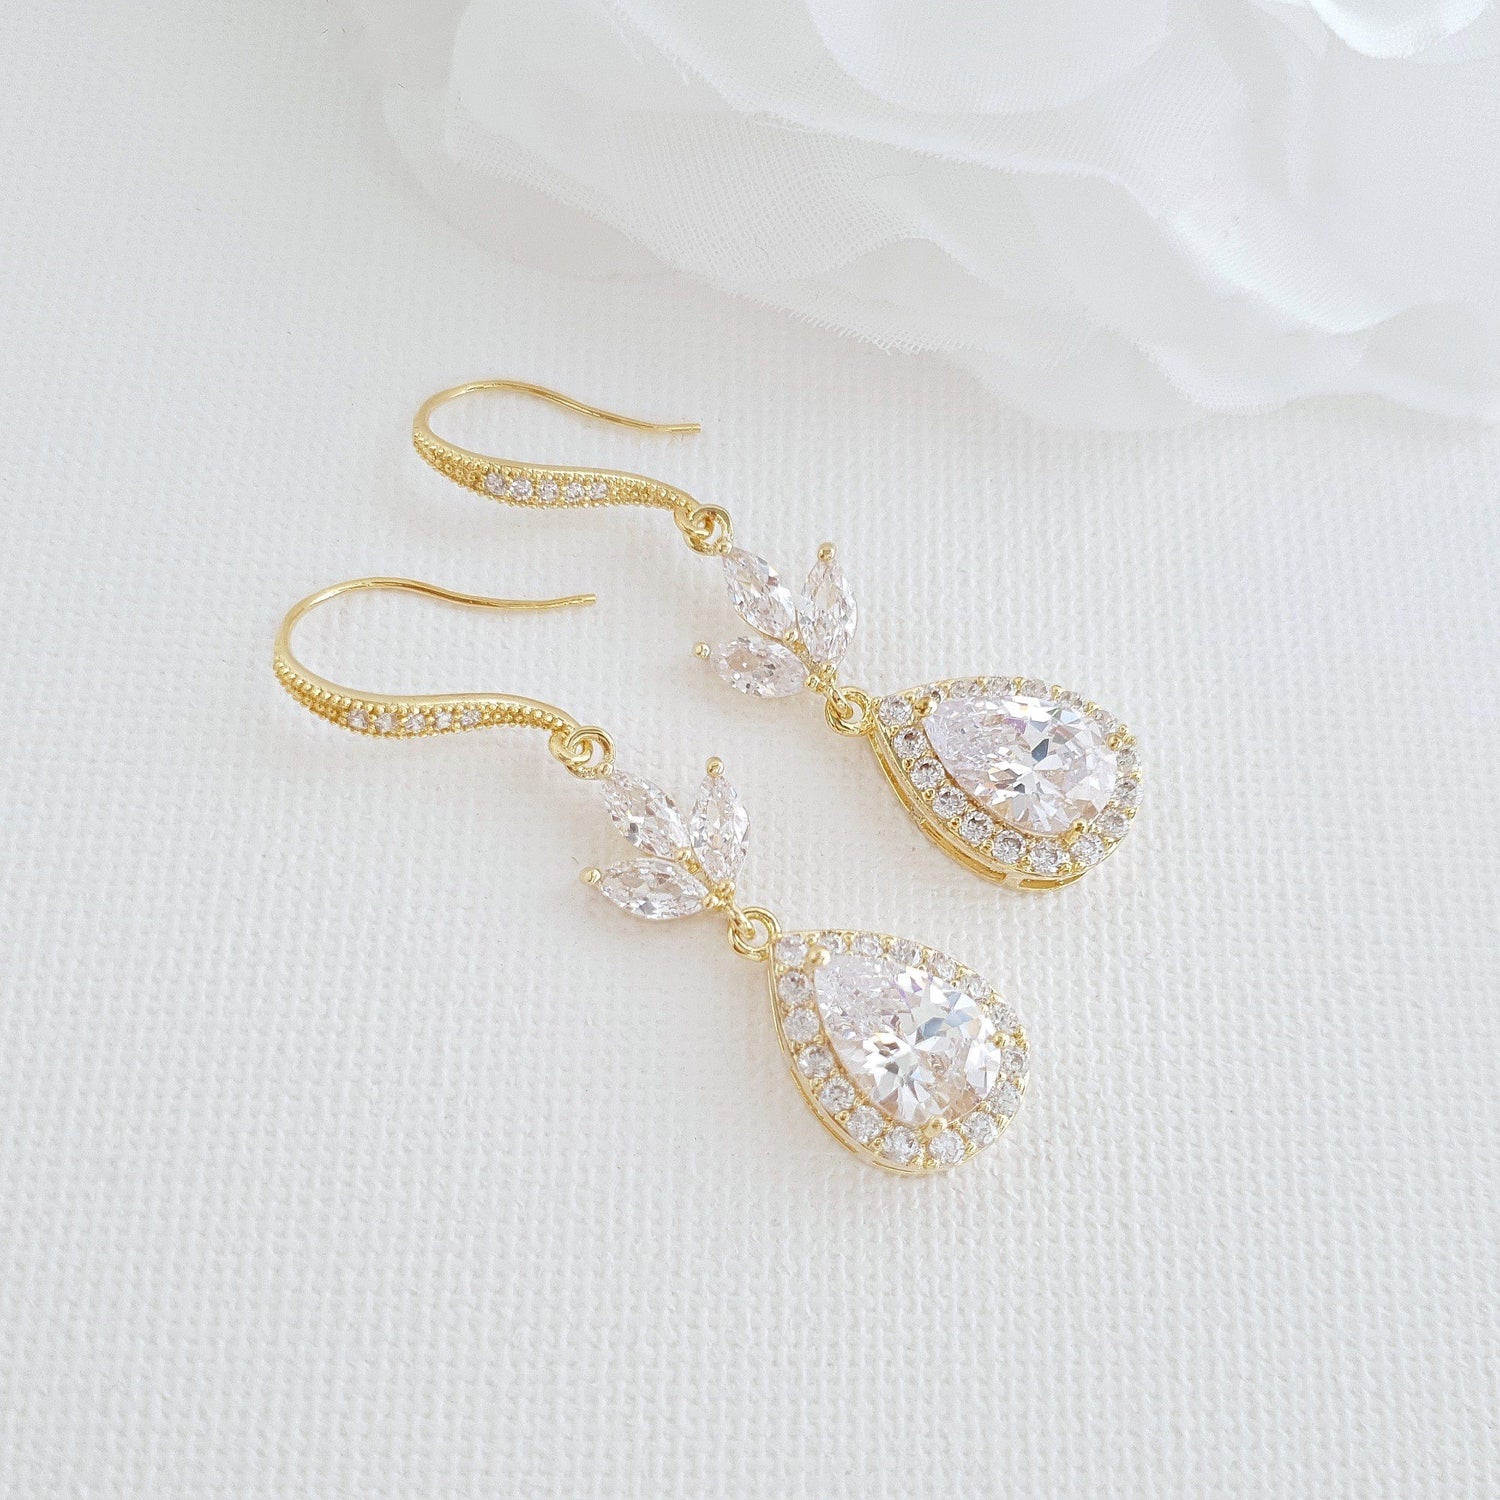 Bridal & Wedding Ear Hook Earrings in Rose Gold for Brides- Lotus - PoetryDesigns